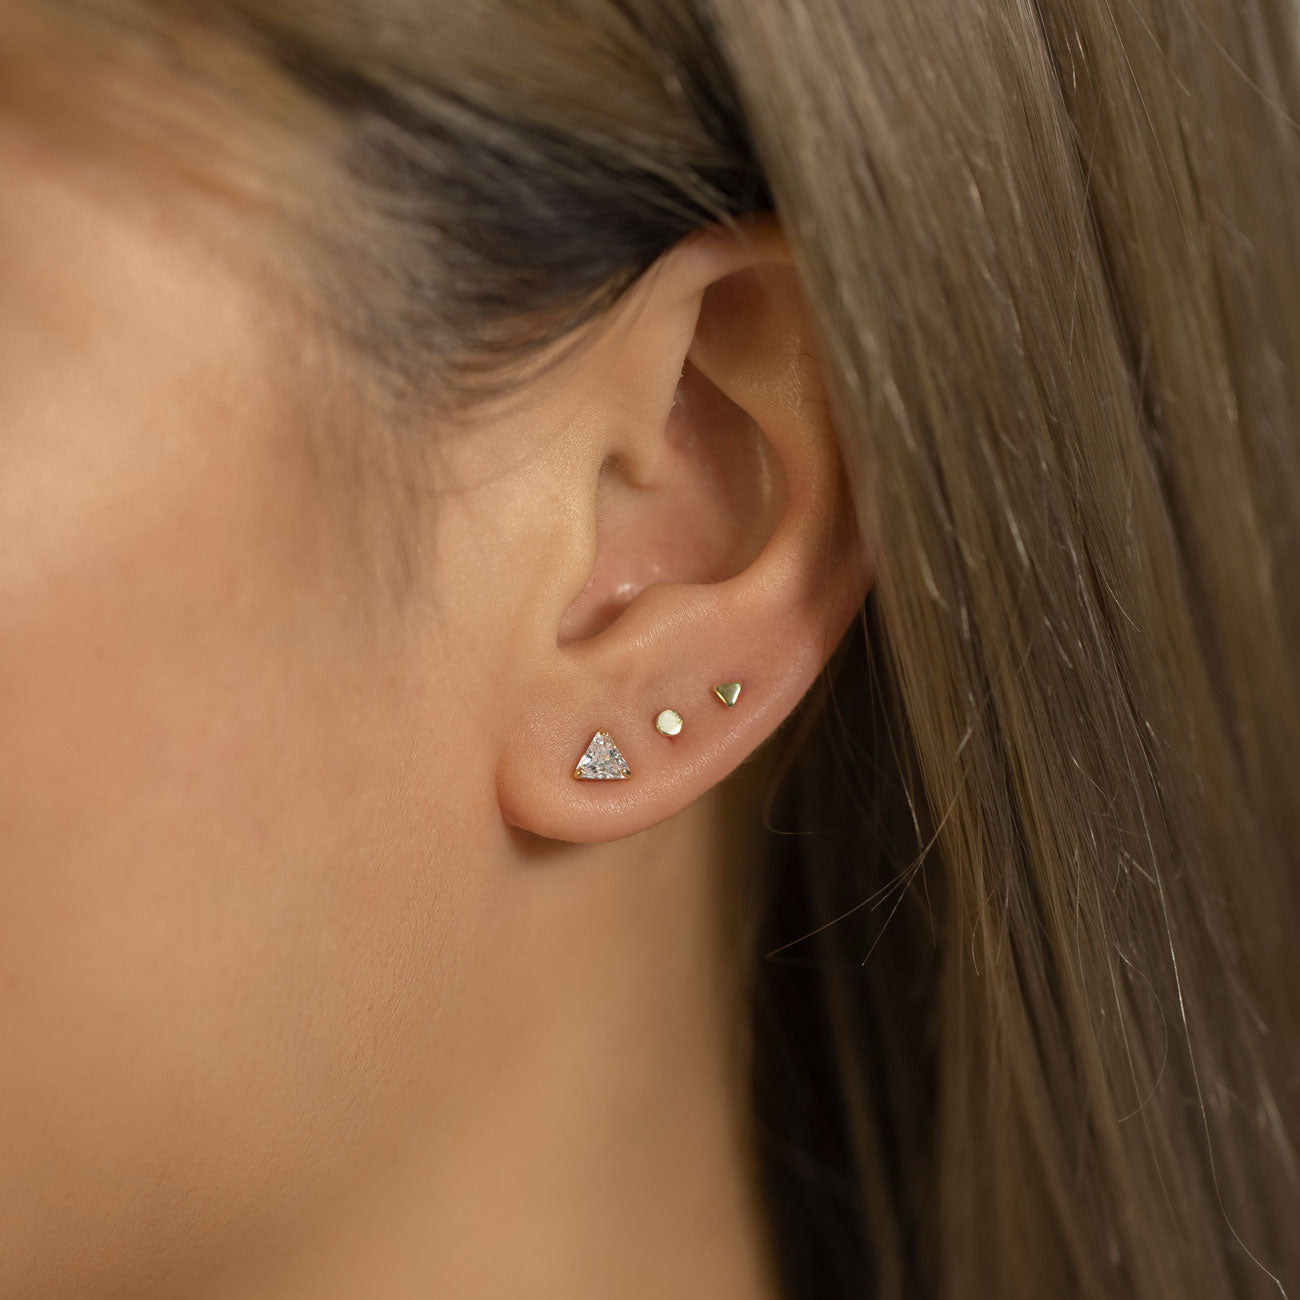 Tiny Sterling Silver Dainty Stud Earrings, Second hole Earrings – AMYO  Jewelry